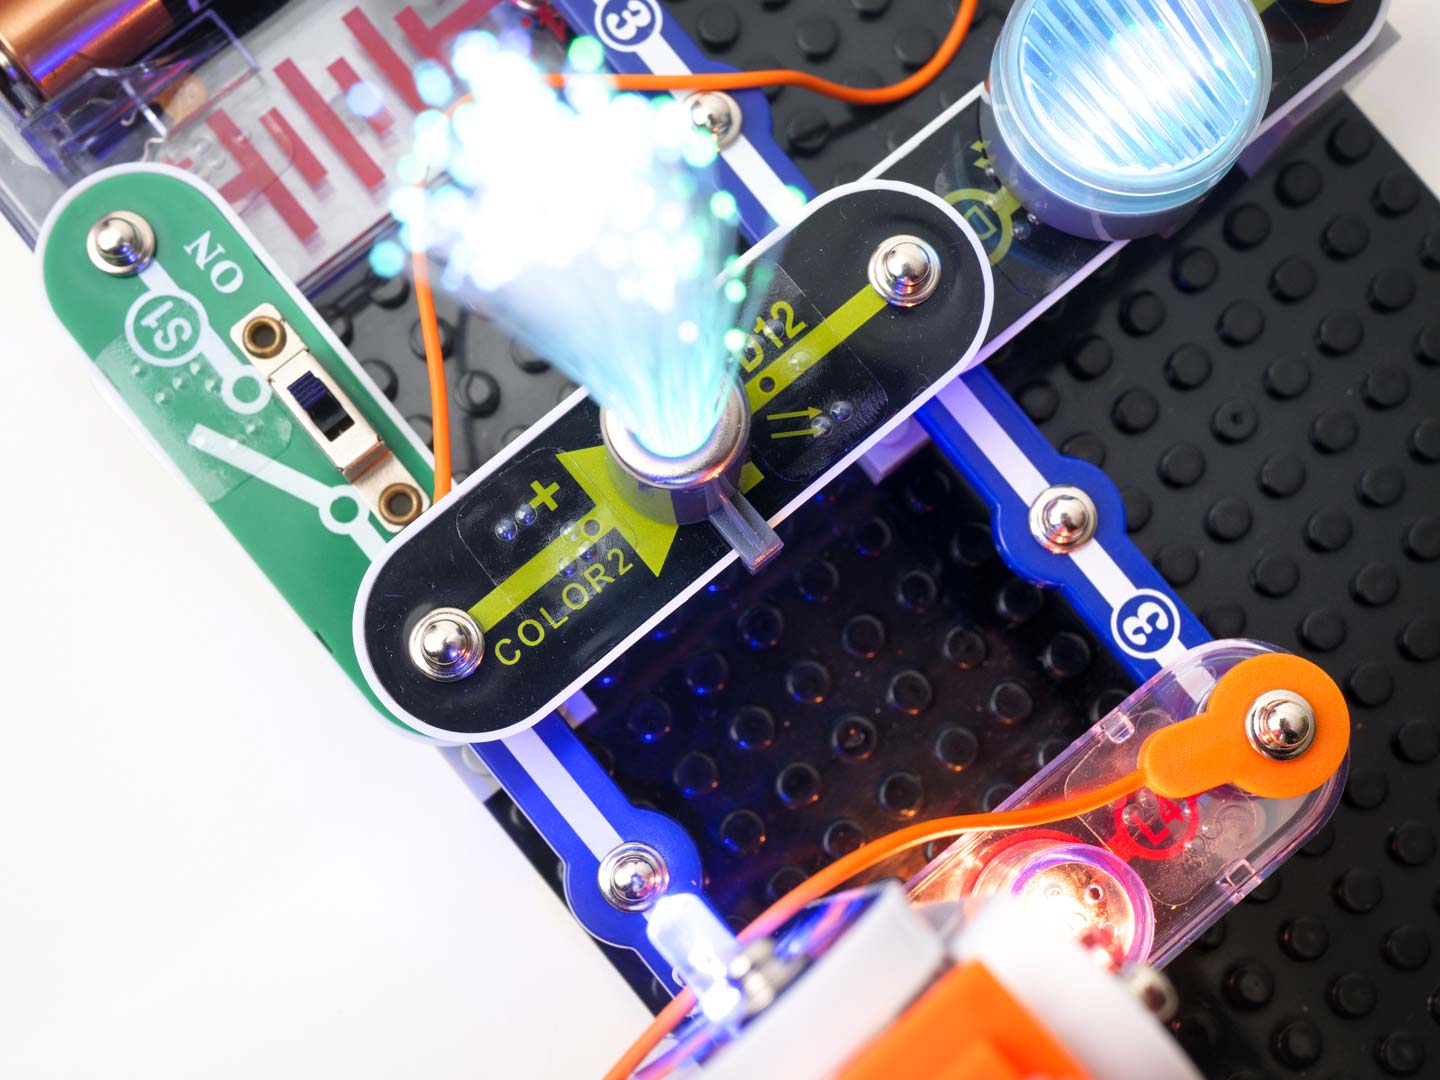 Snap Circuits Light Kit